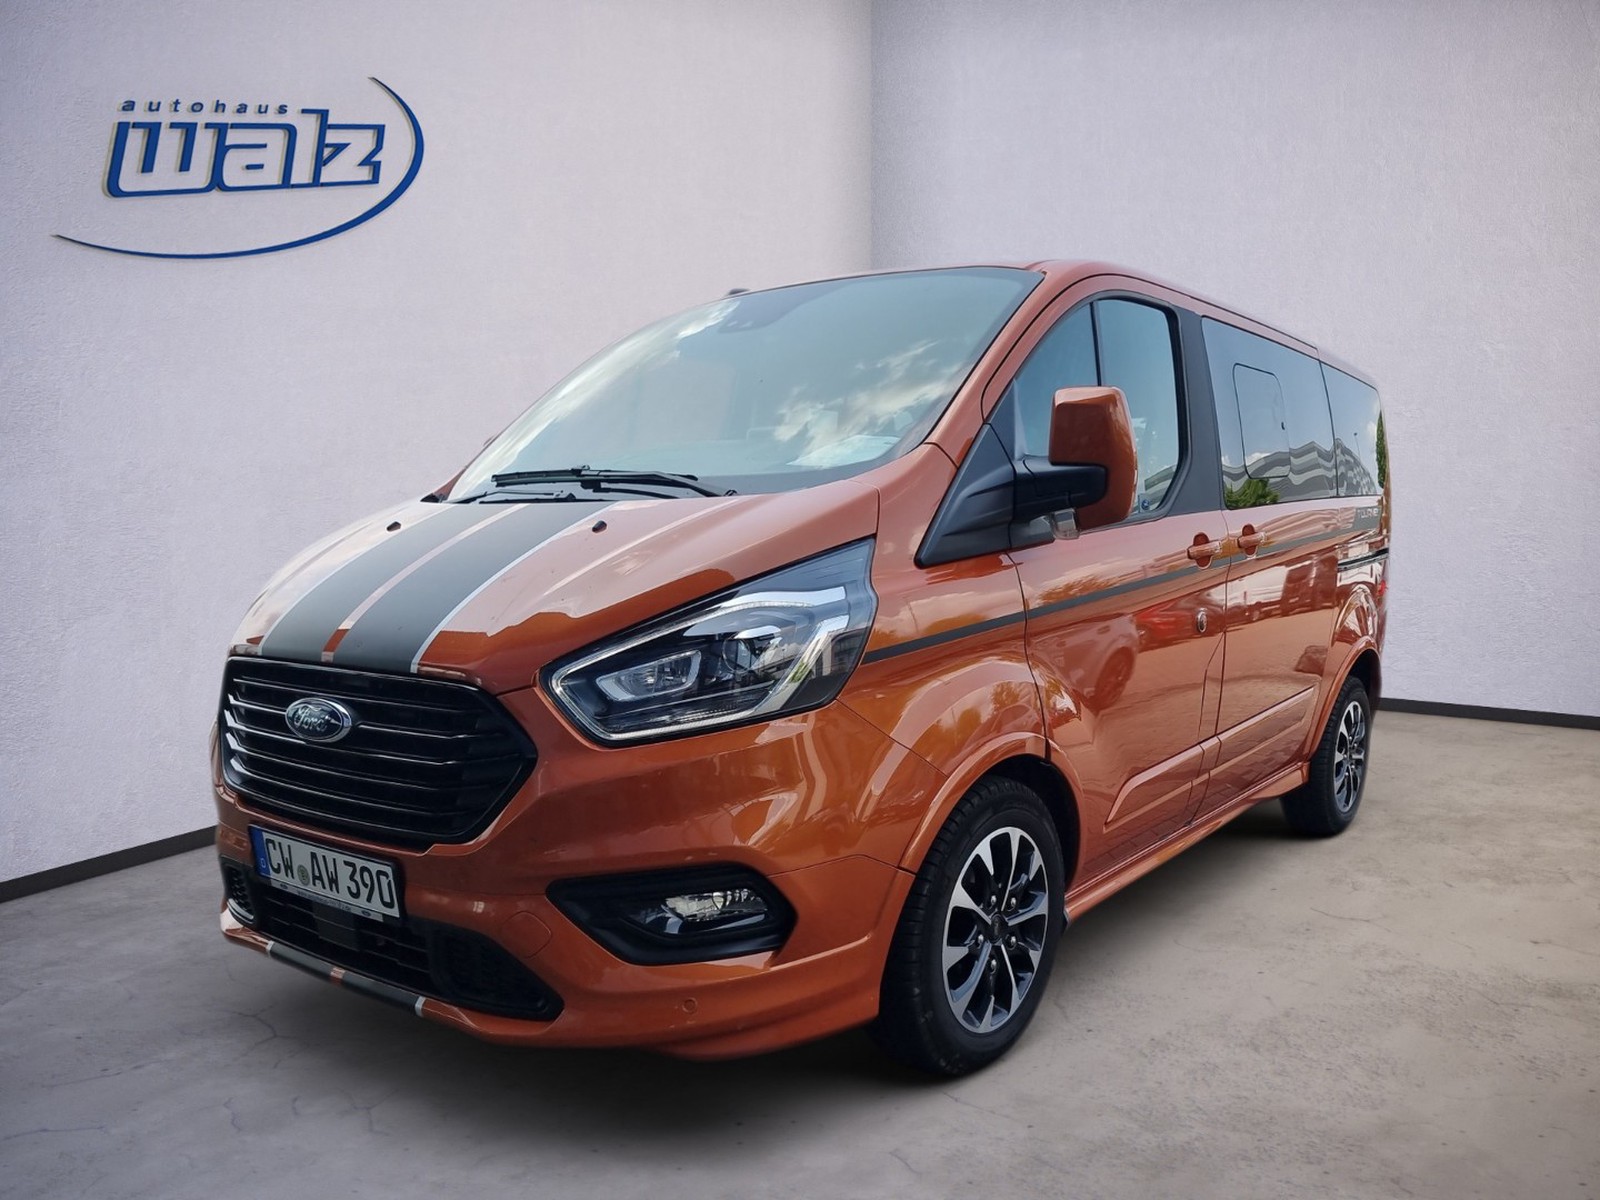 Ford Tourneo Custom Sport L1 gebraucht kaufen in Neuweiler Preis 49990 eur  - Int.Nr.: 48237